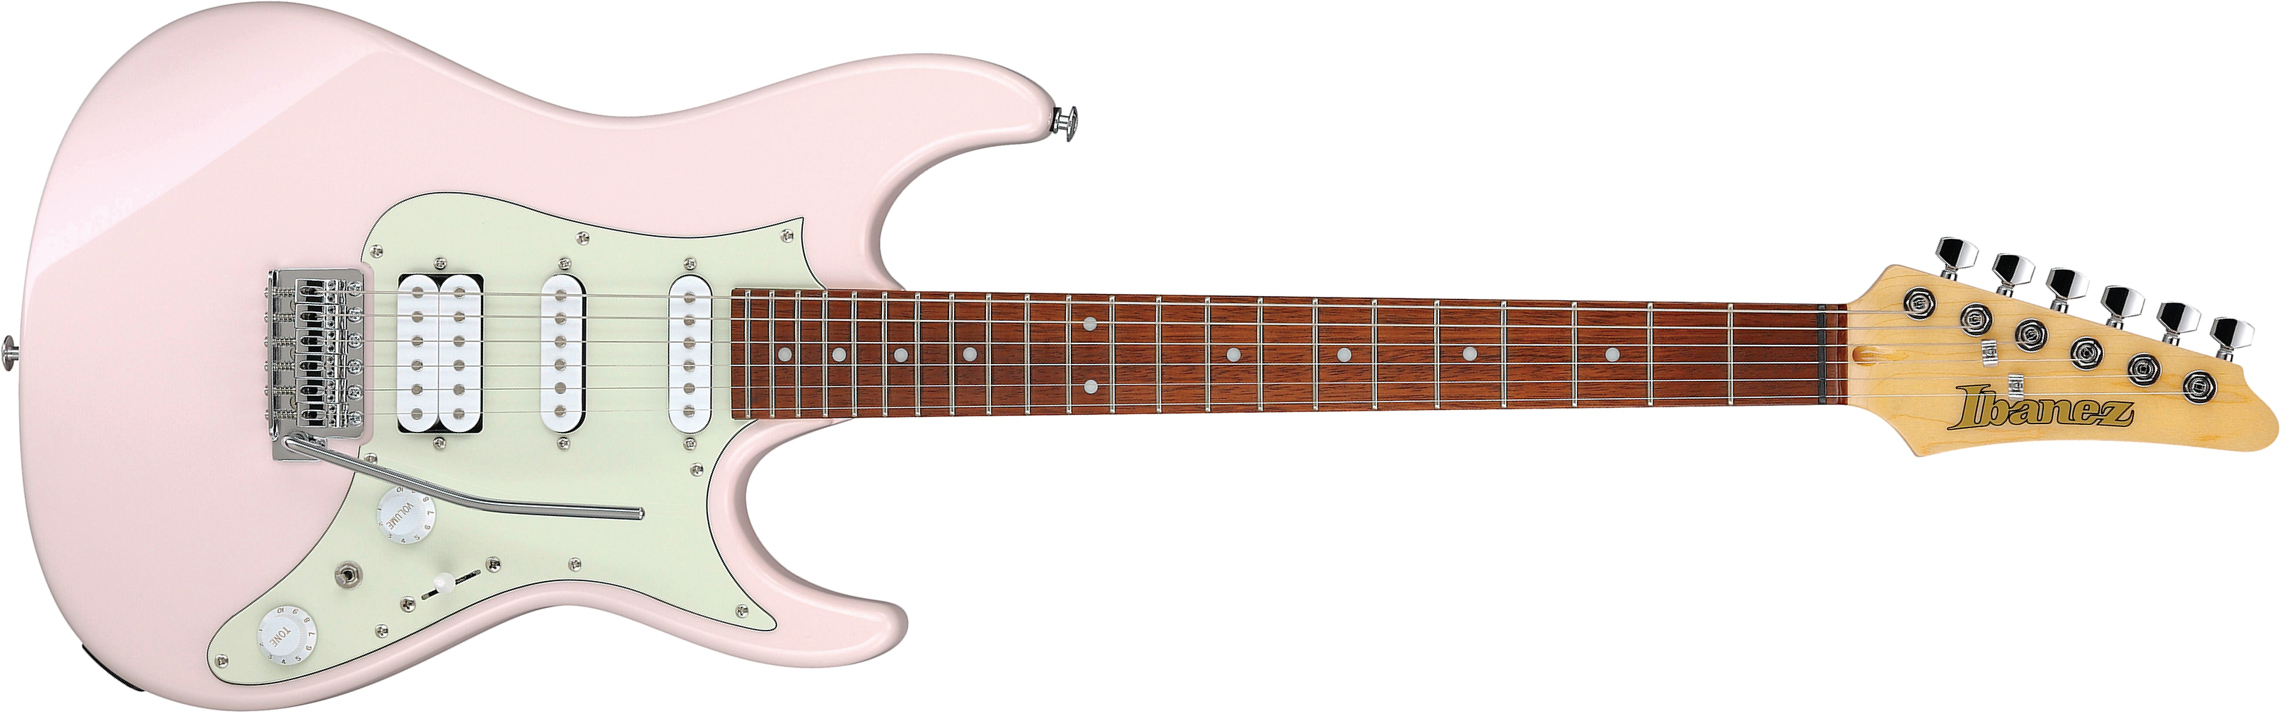 Ibanez Azes40 Ppk Standard Hss Trem Jat - Pastel Pink - Guitarra eléctrica con forma de str. - Main picture